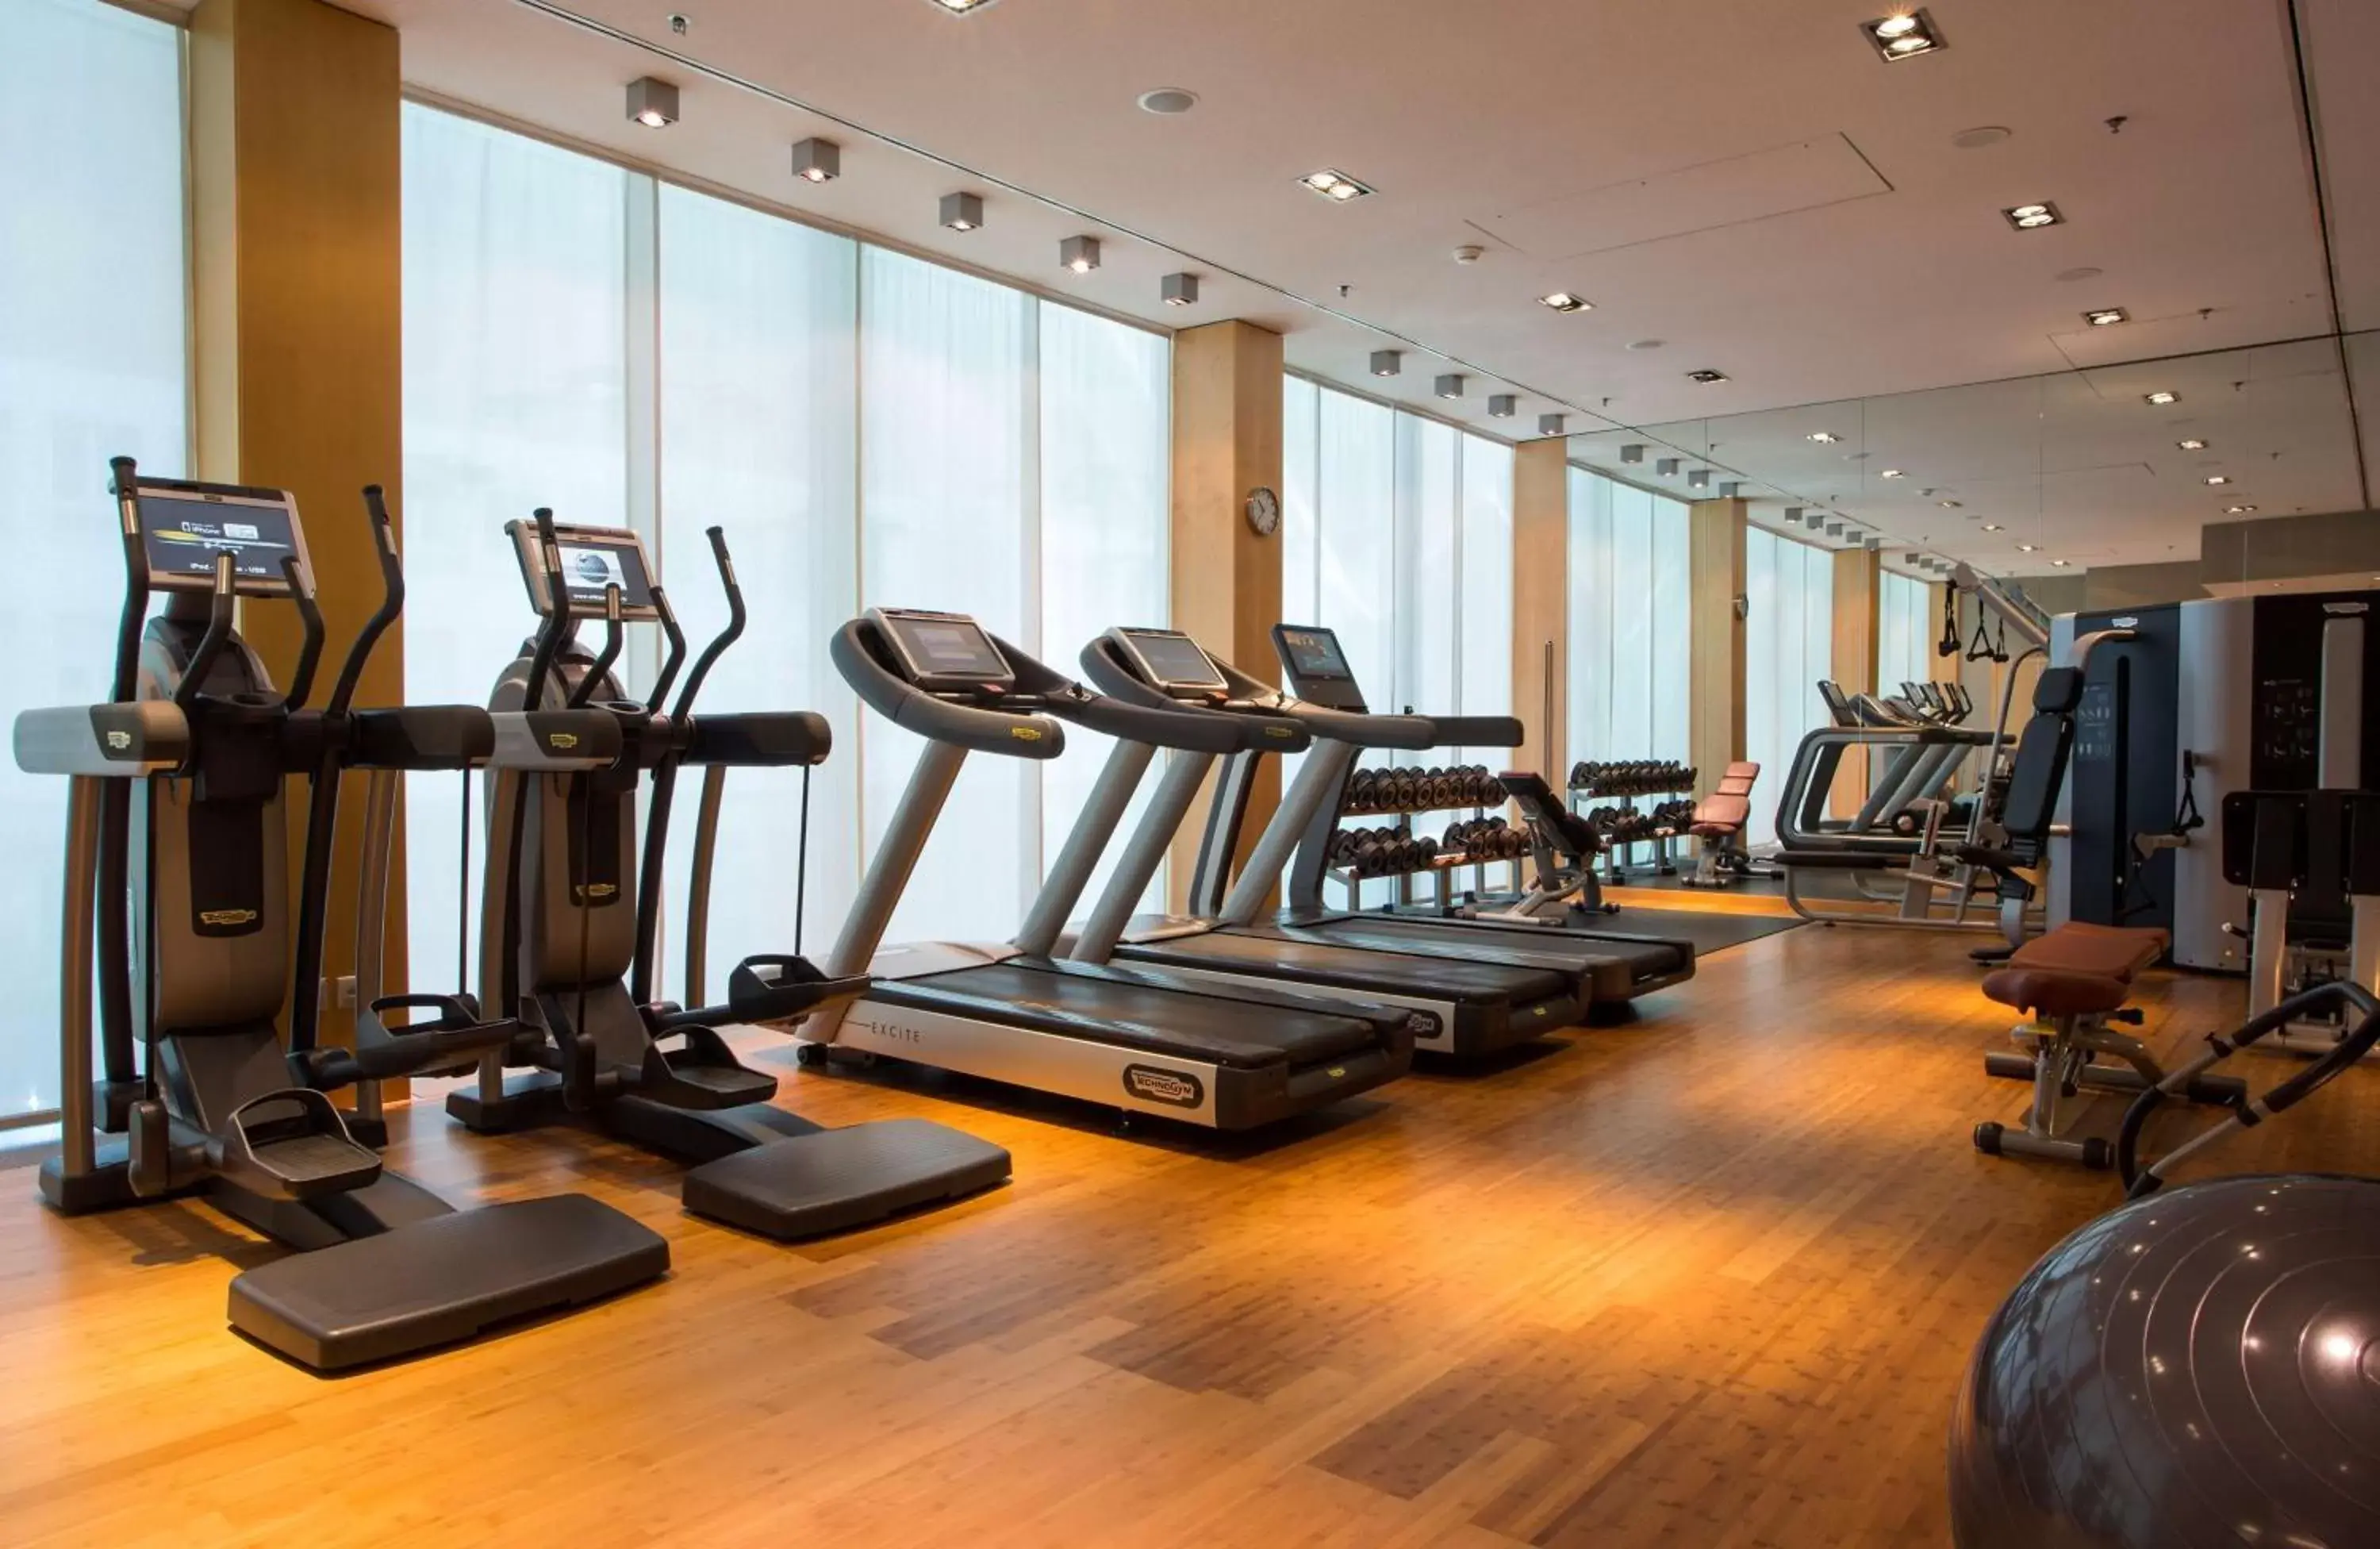 Fitness centre/facilities, Fitness Center/Facilities in Park Hyatt Zurich – City Center Luxury